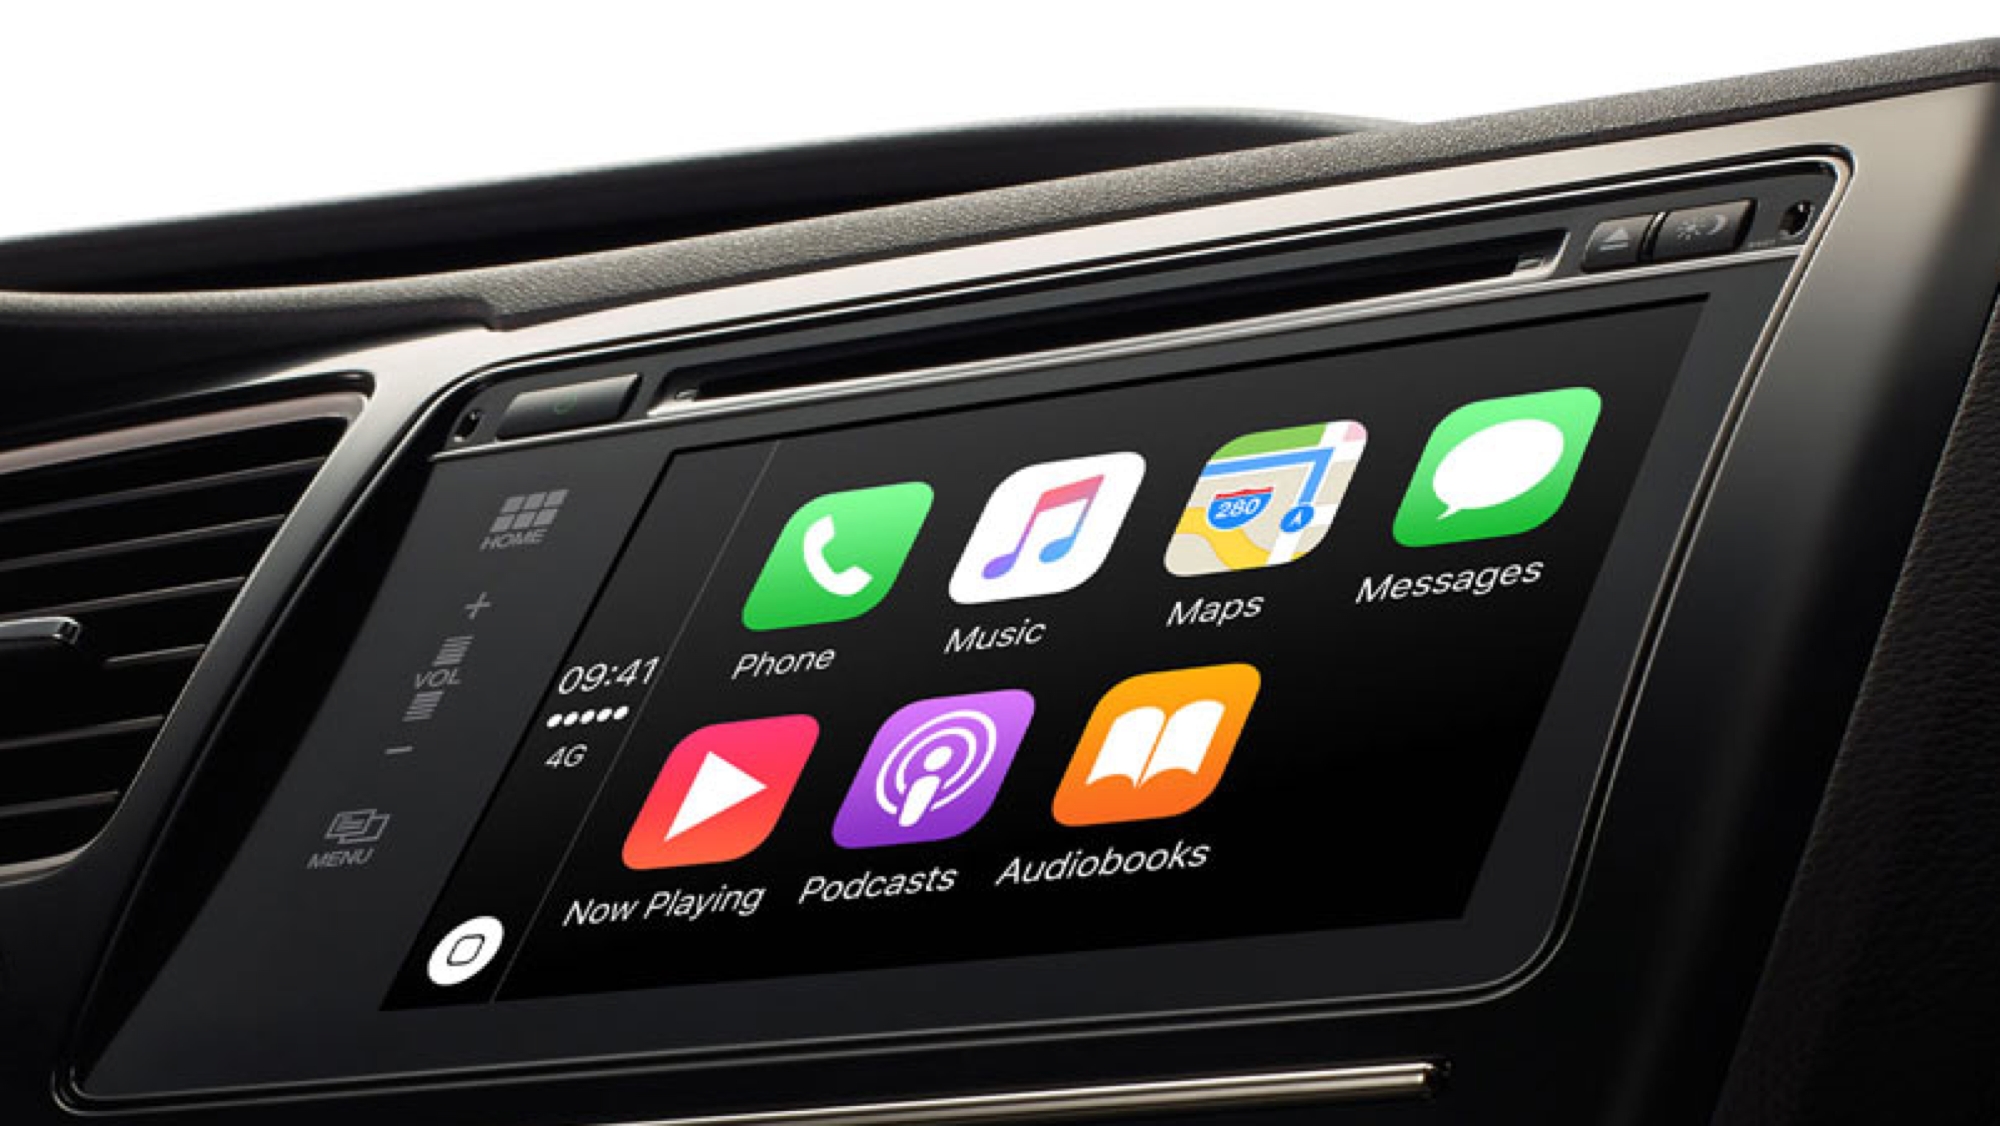 Preis für Apple Car enthüllt: Wird Project Titan 55.000 US-Dollar kosten?